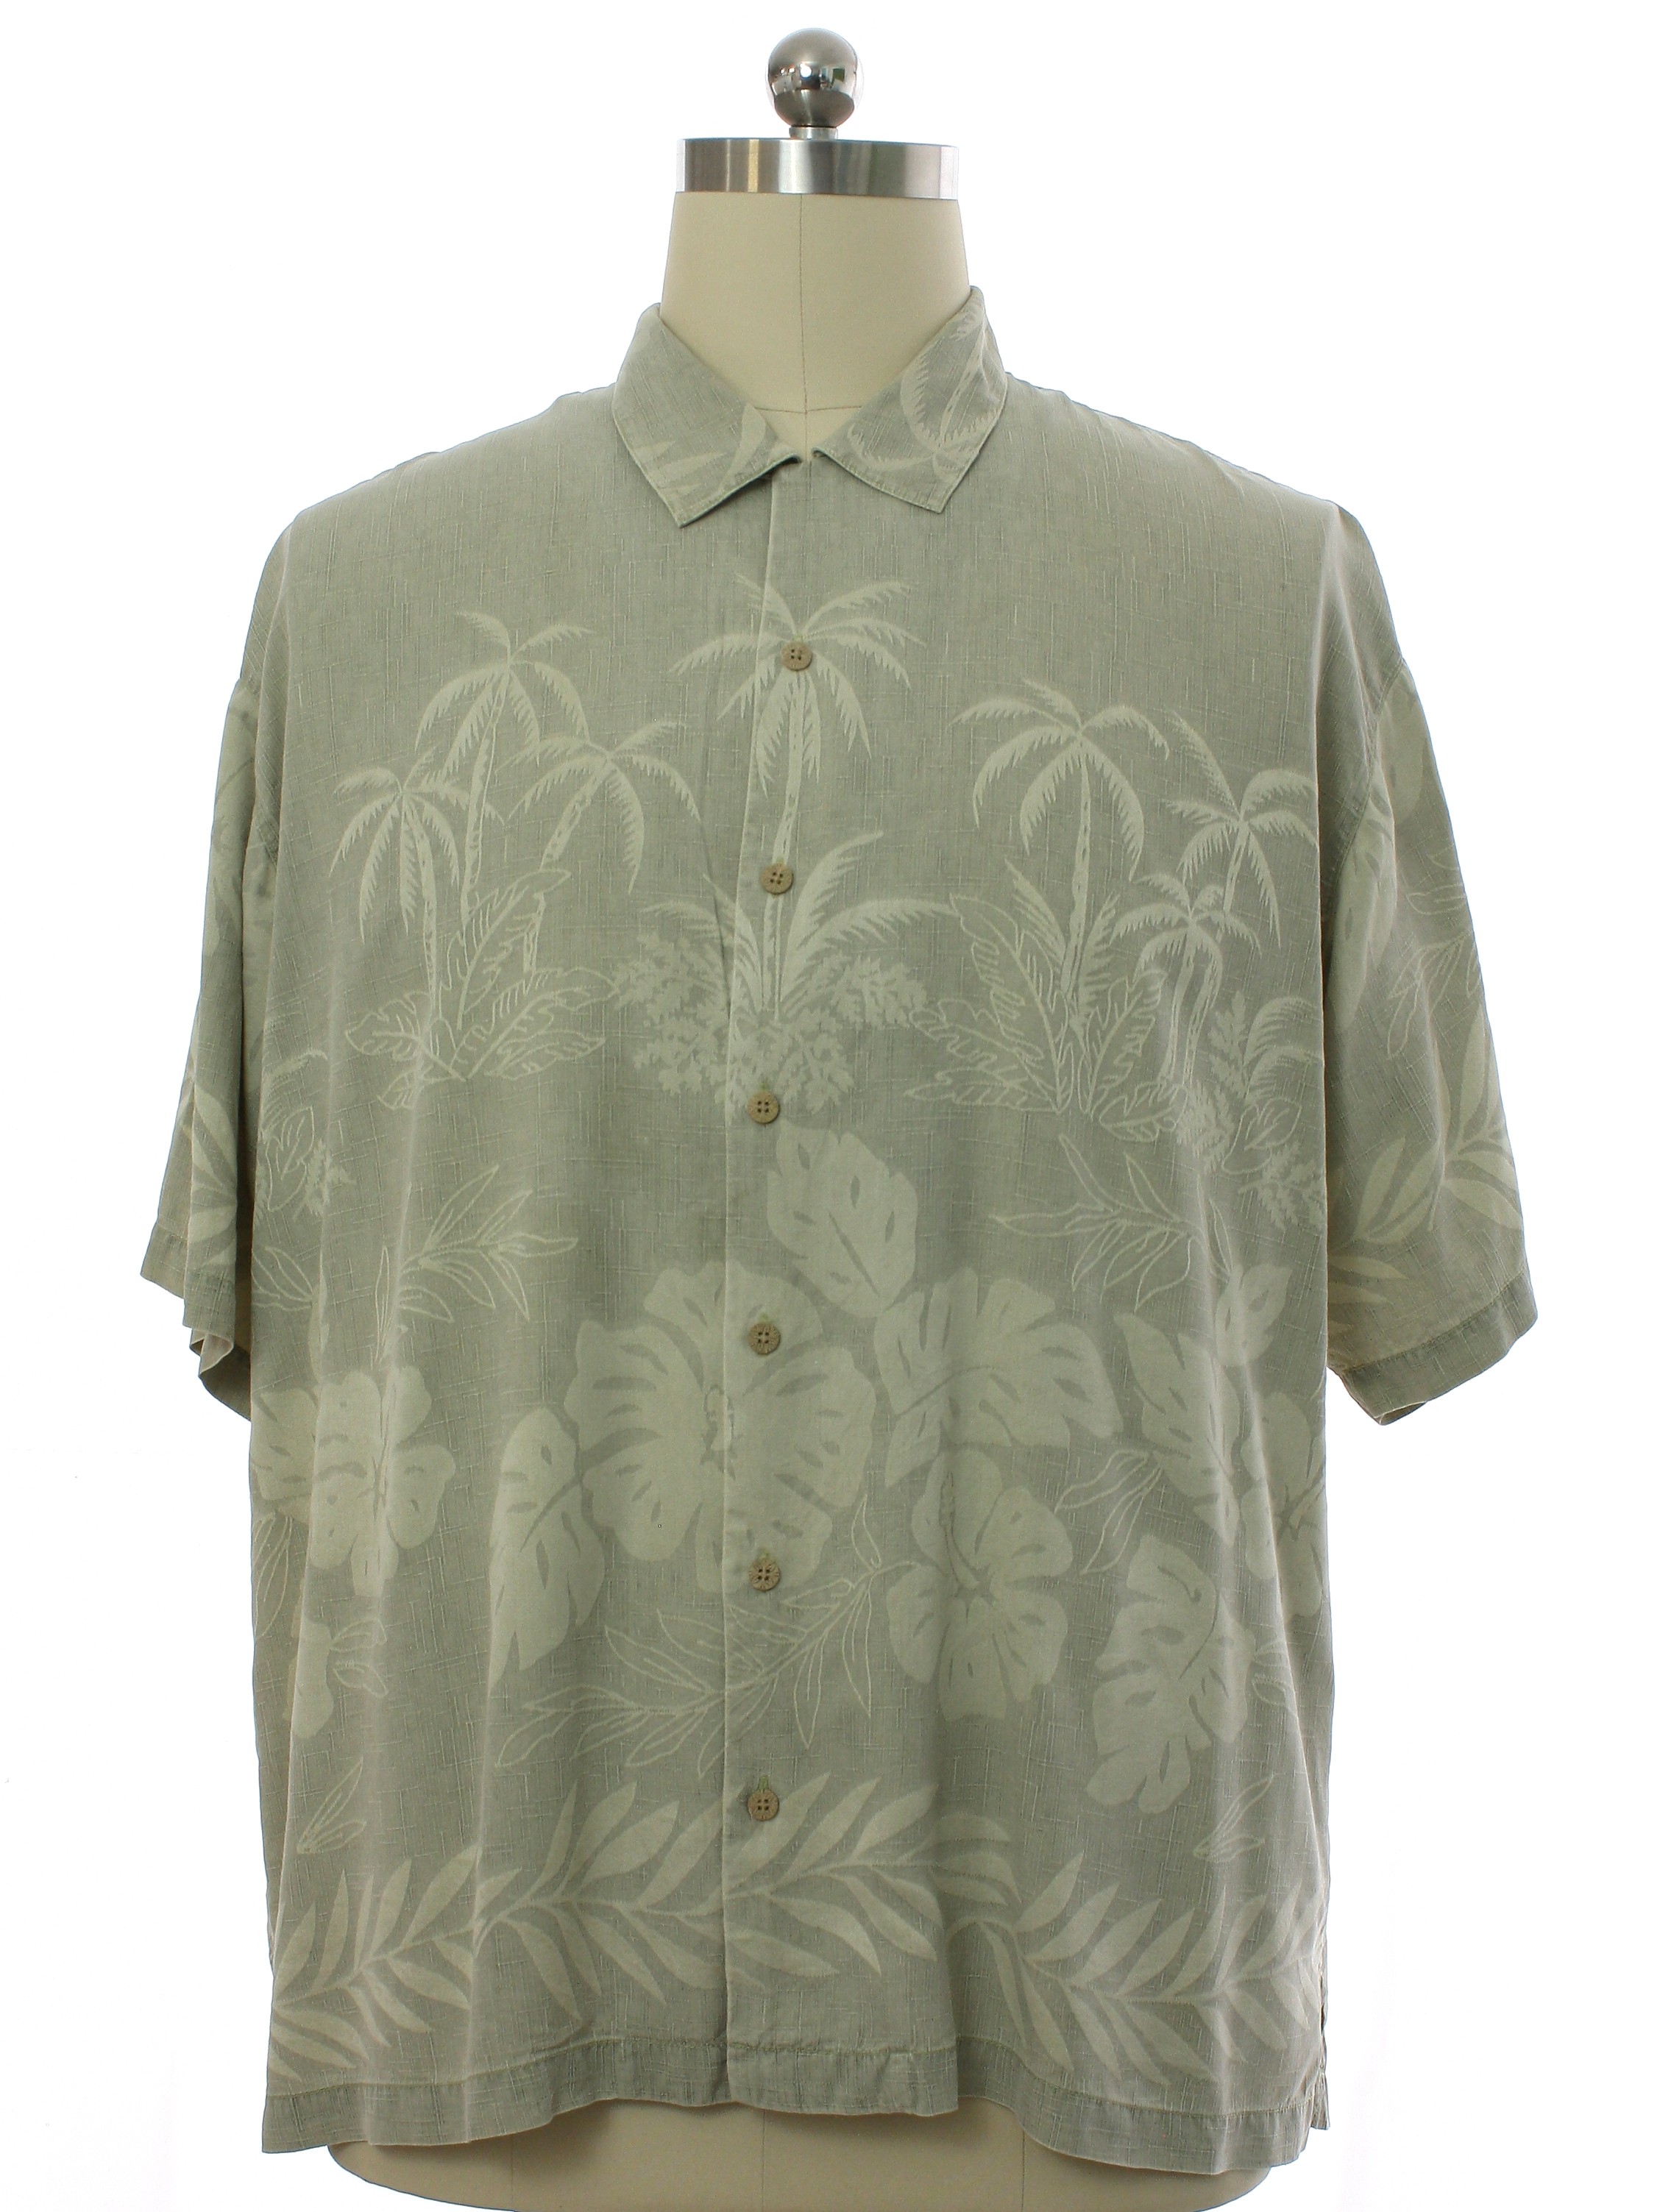 Hawaiian Shirt: 90s -Tommy Bahama- Mens light gray background